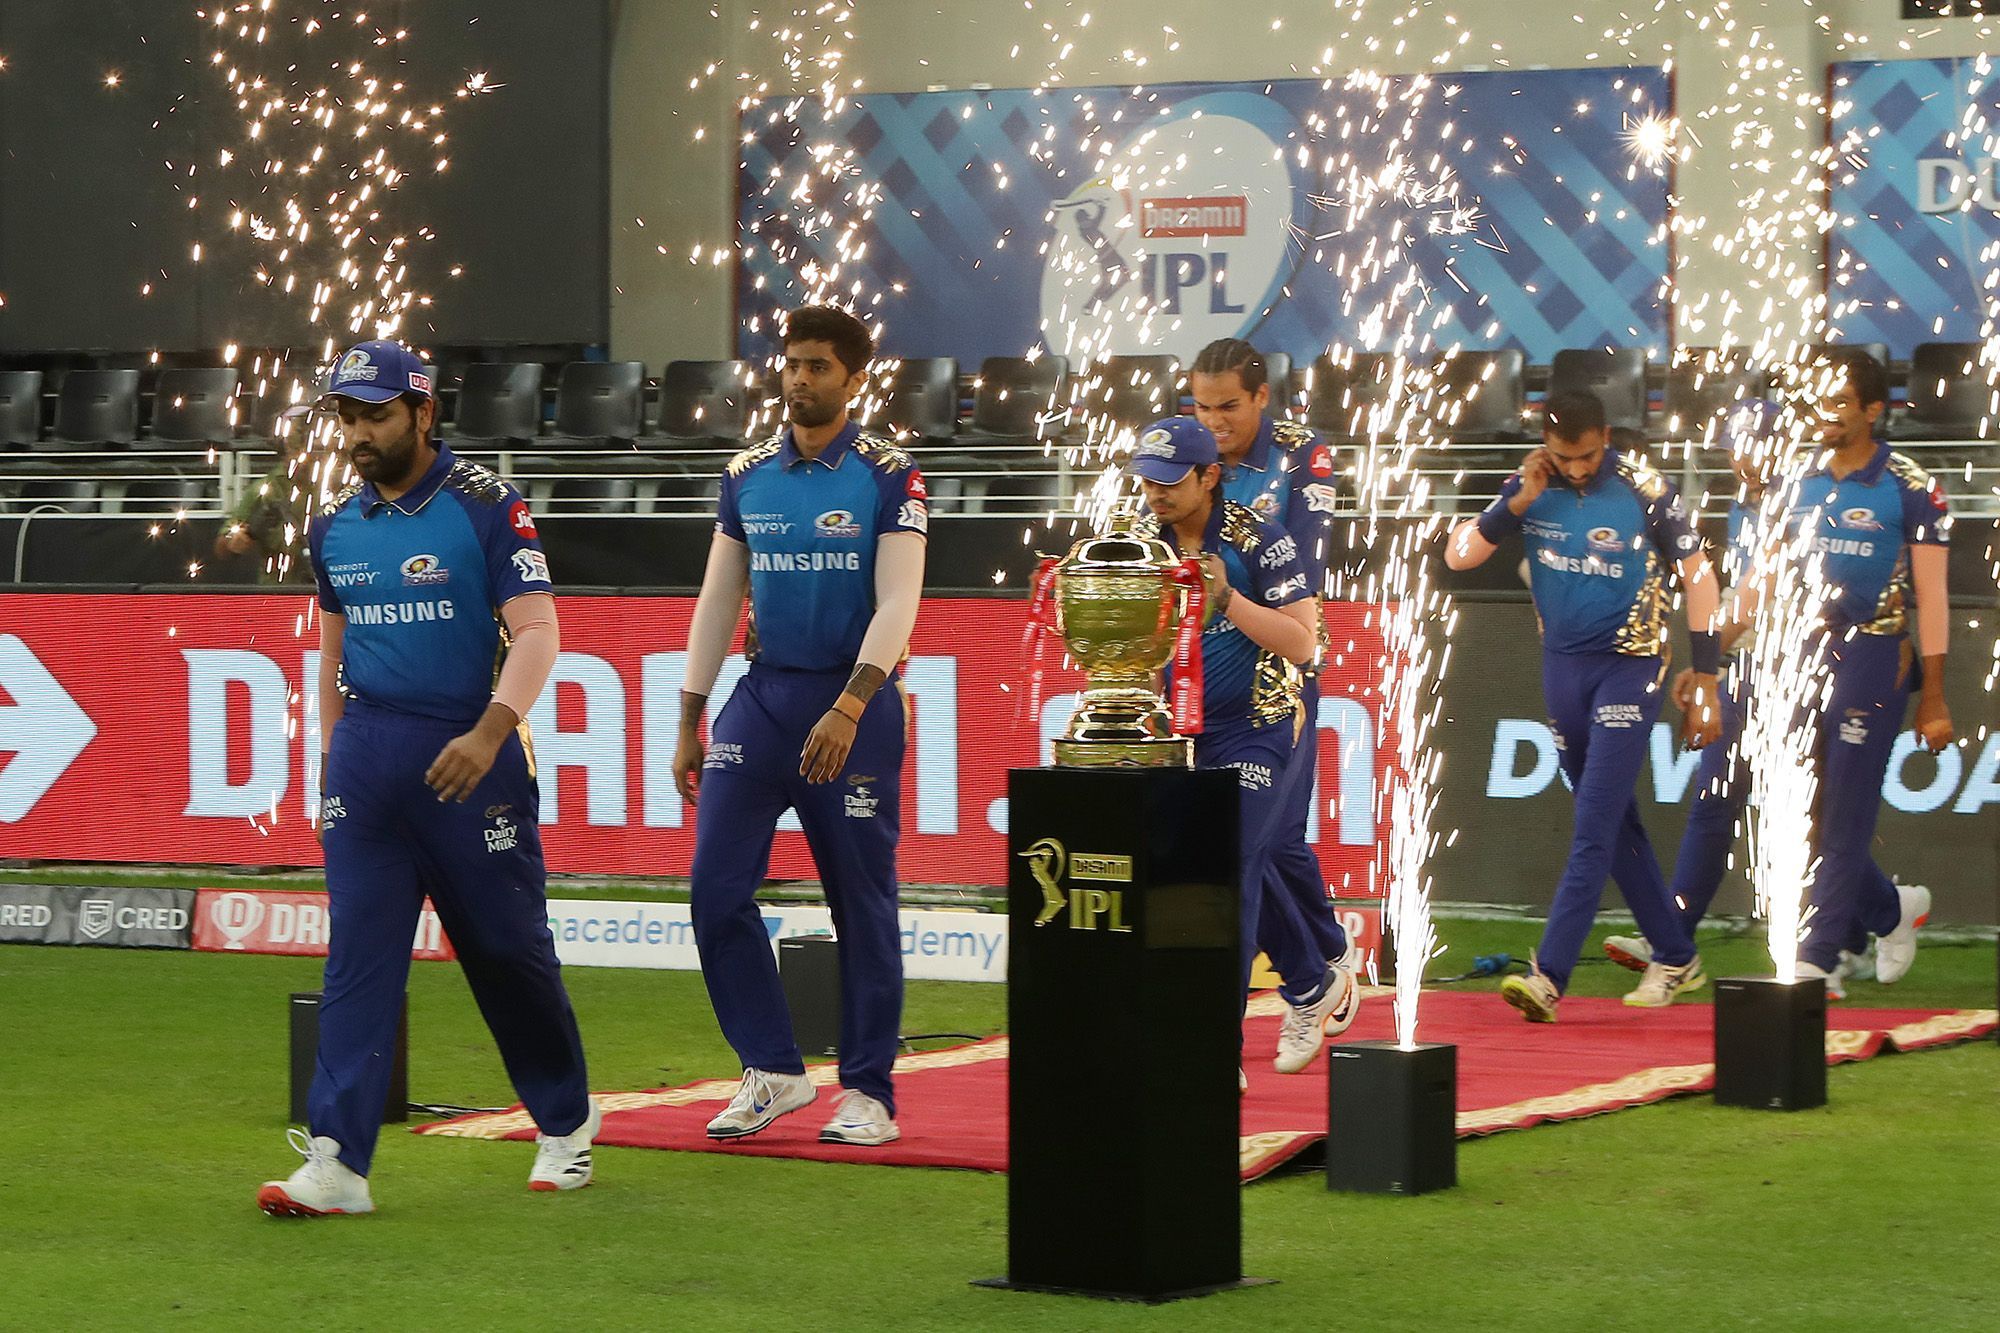 IPL 2020 Final: Mumbai Indians aim to defend title vs Delhi Capitals